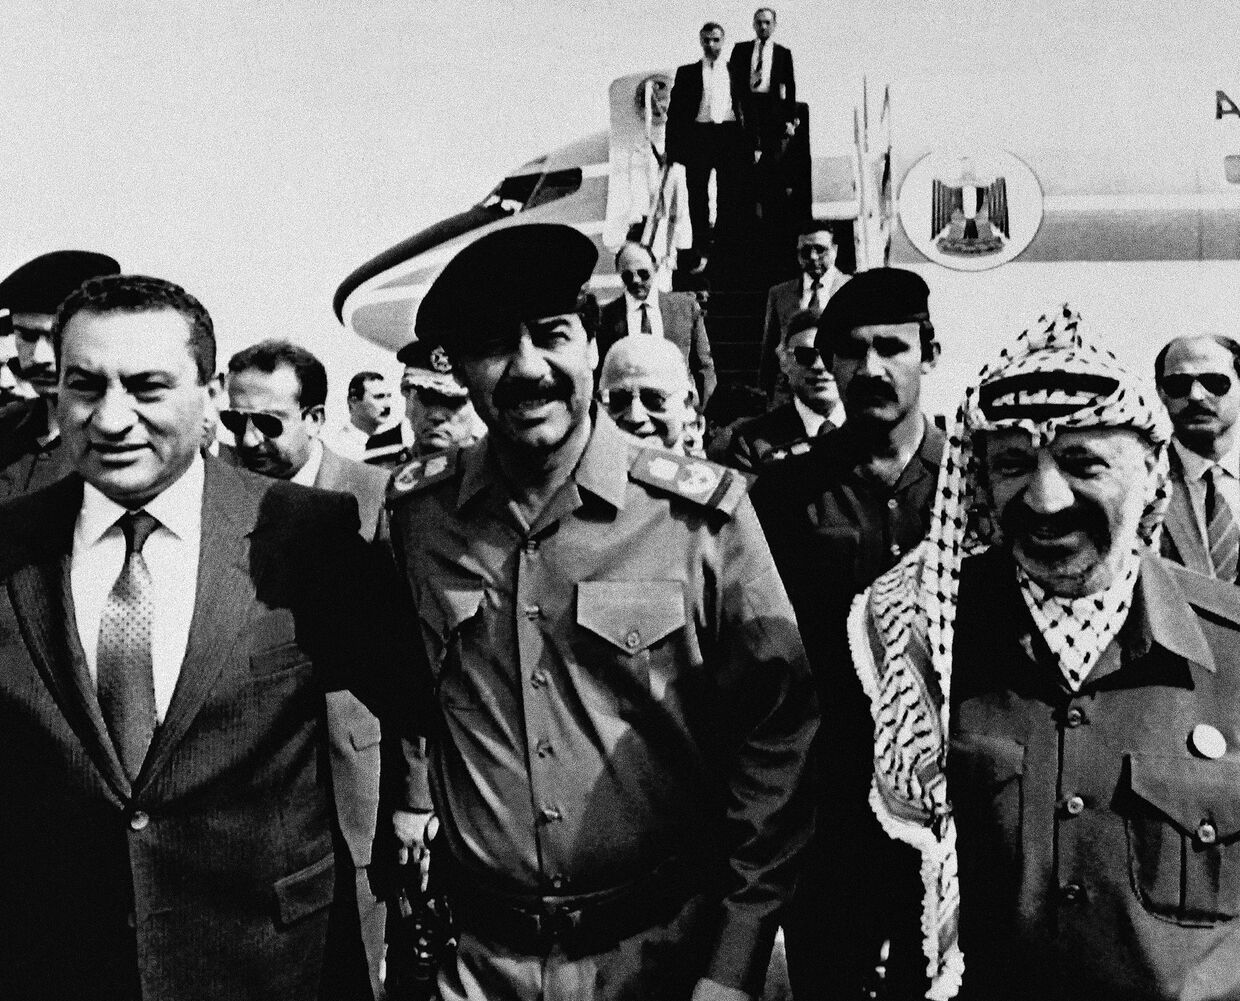 Хосни Мубарак, Саддам Хусейн и Ясир Арафат во время встречи в Багдаде, 1988 год